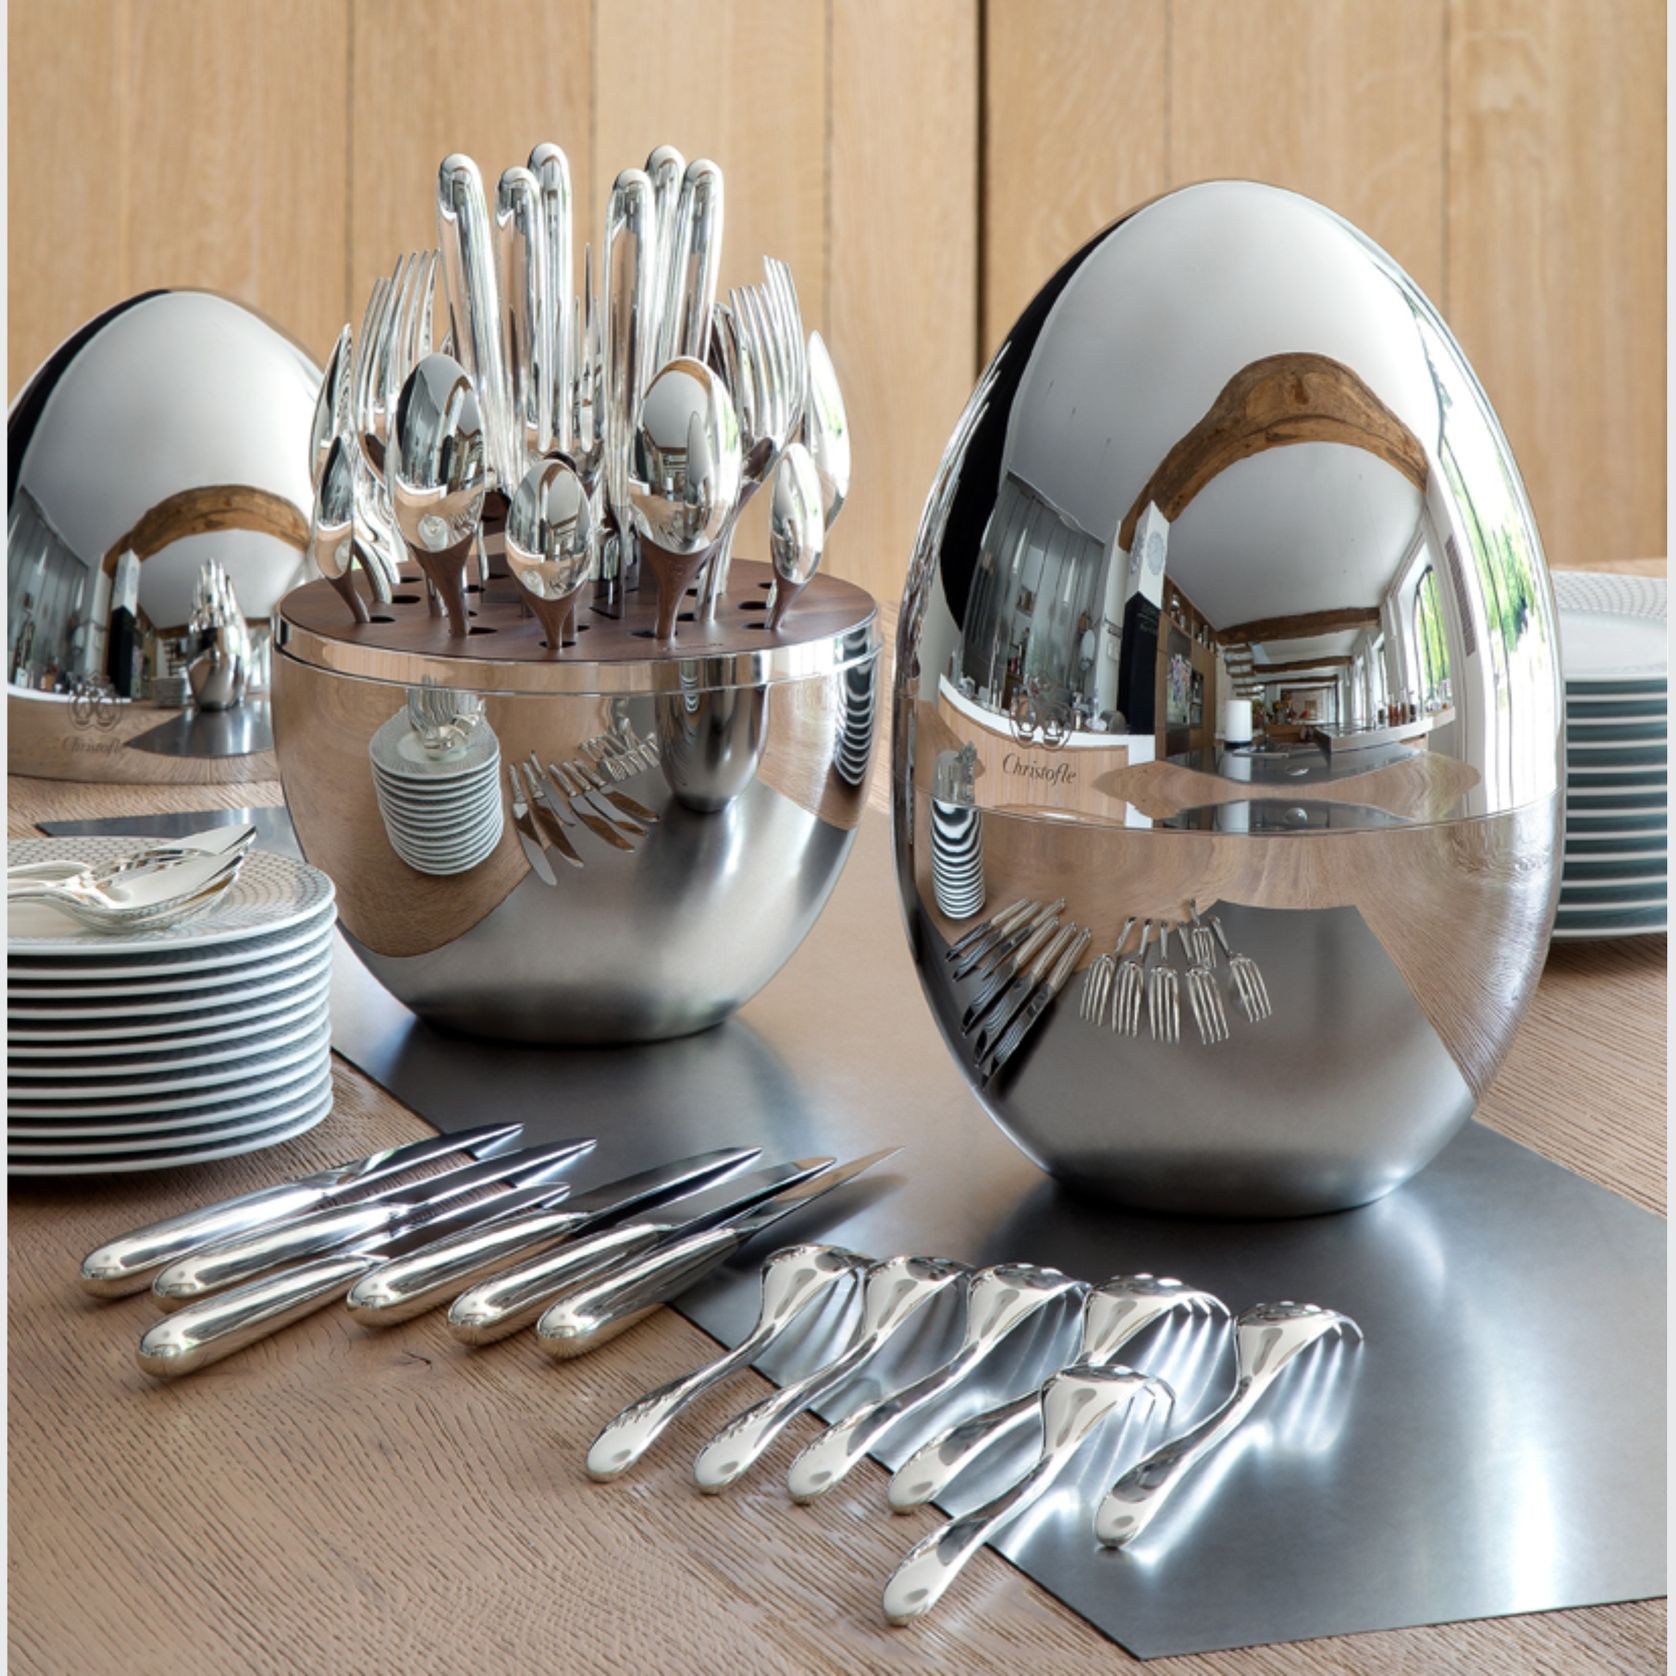 The Studio of Tableware Cutlery gallery detail image